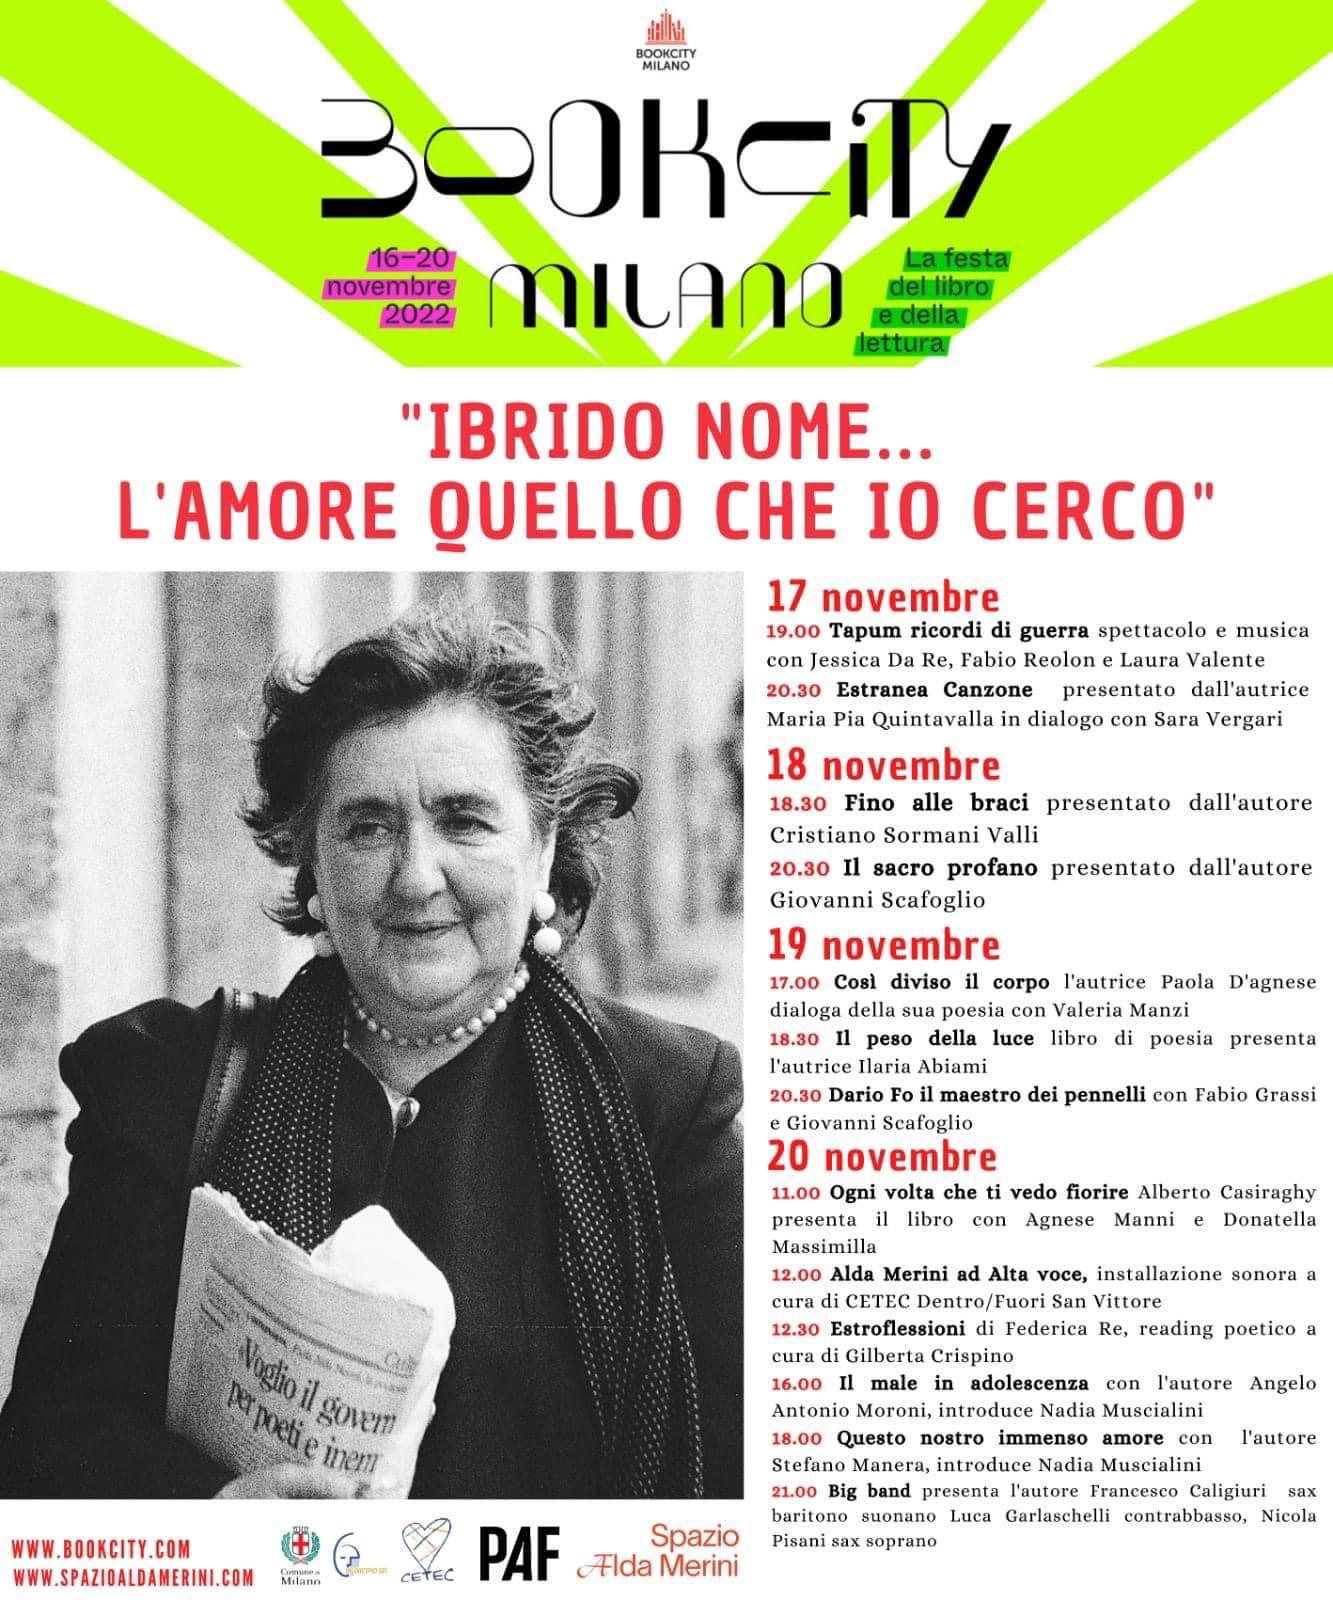 Book City Milano dal 16 al 20 novembre – “IBRIDO NOME… L’AMORE QUELLO CHE IO CERCO”